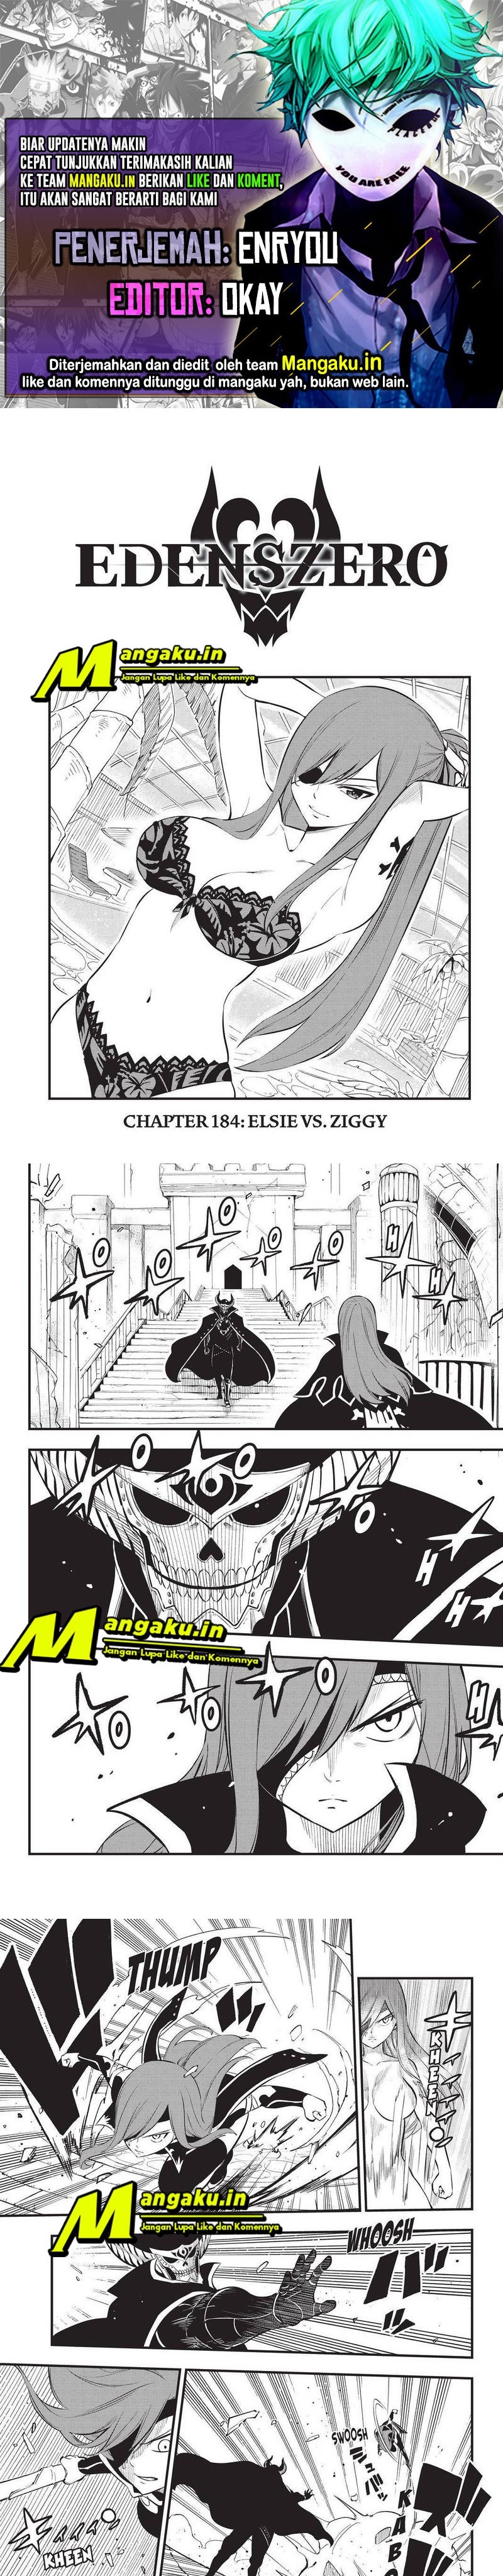 Eden's Zero Chapter 184 1